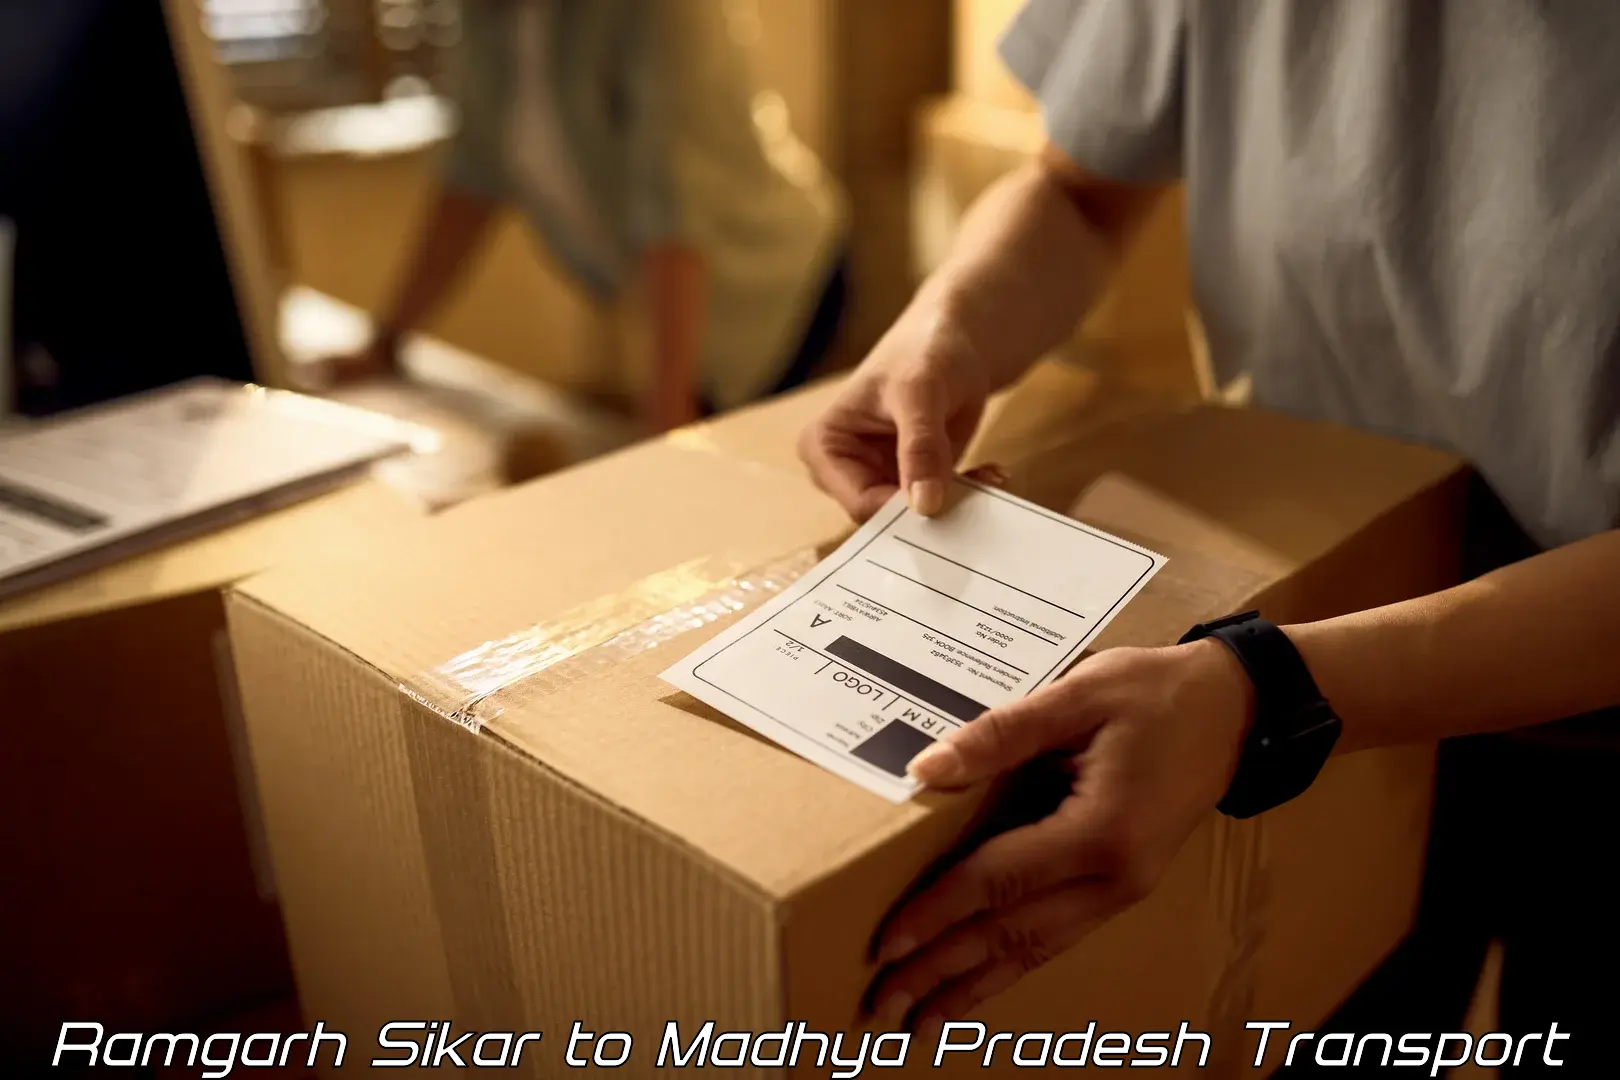 Bike shipping service Ramgarh Sikar to Burhar